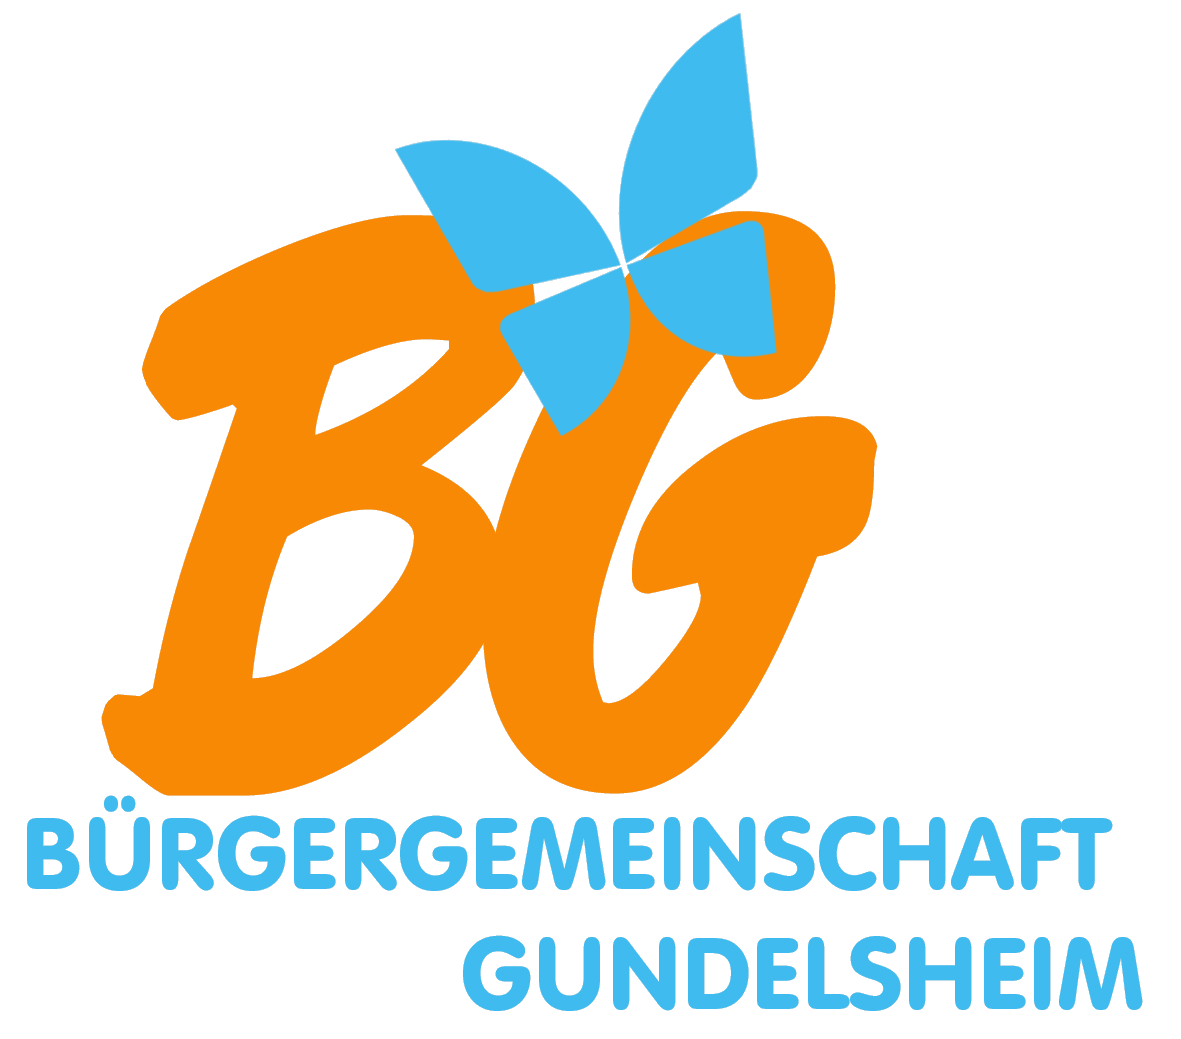 Bürgergemeinschaft Gundelsheim